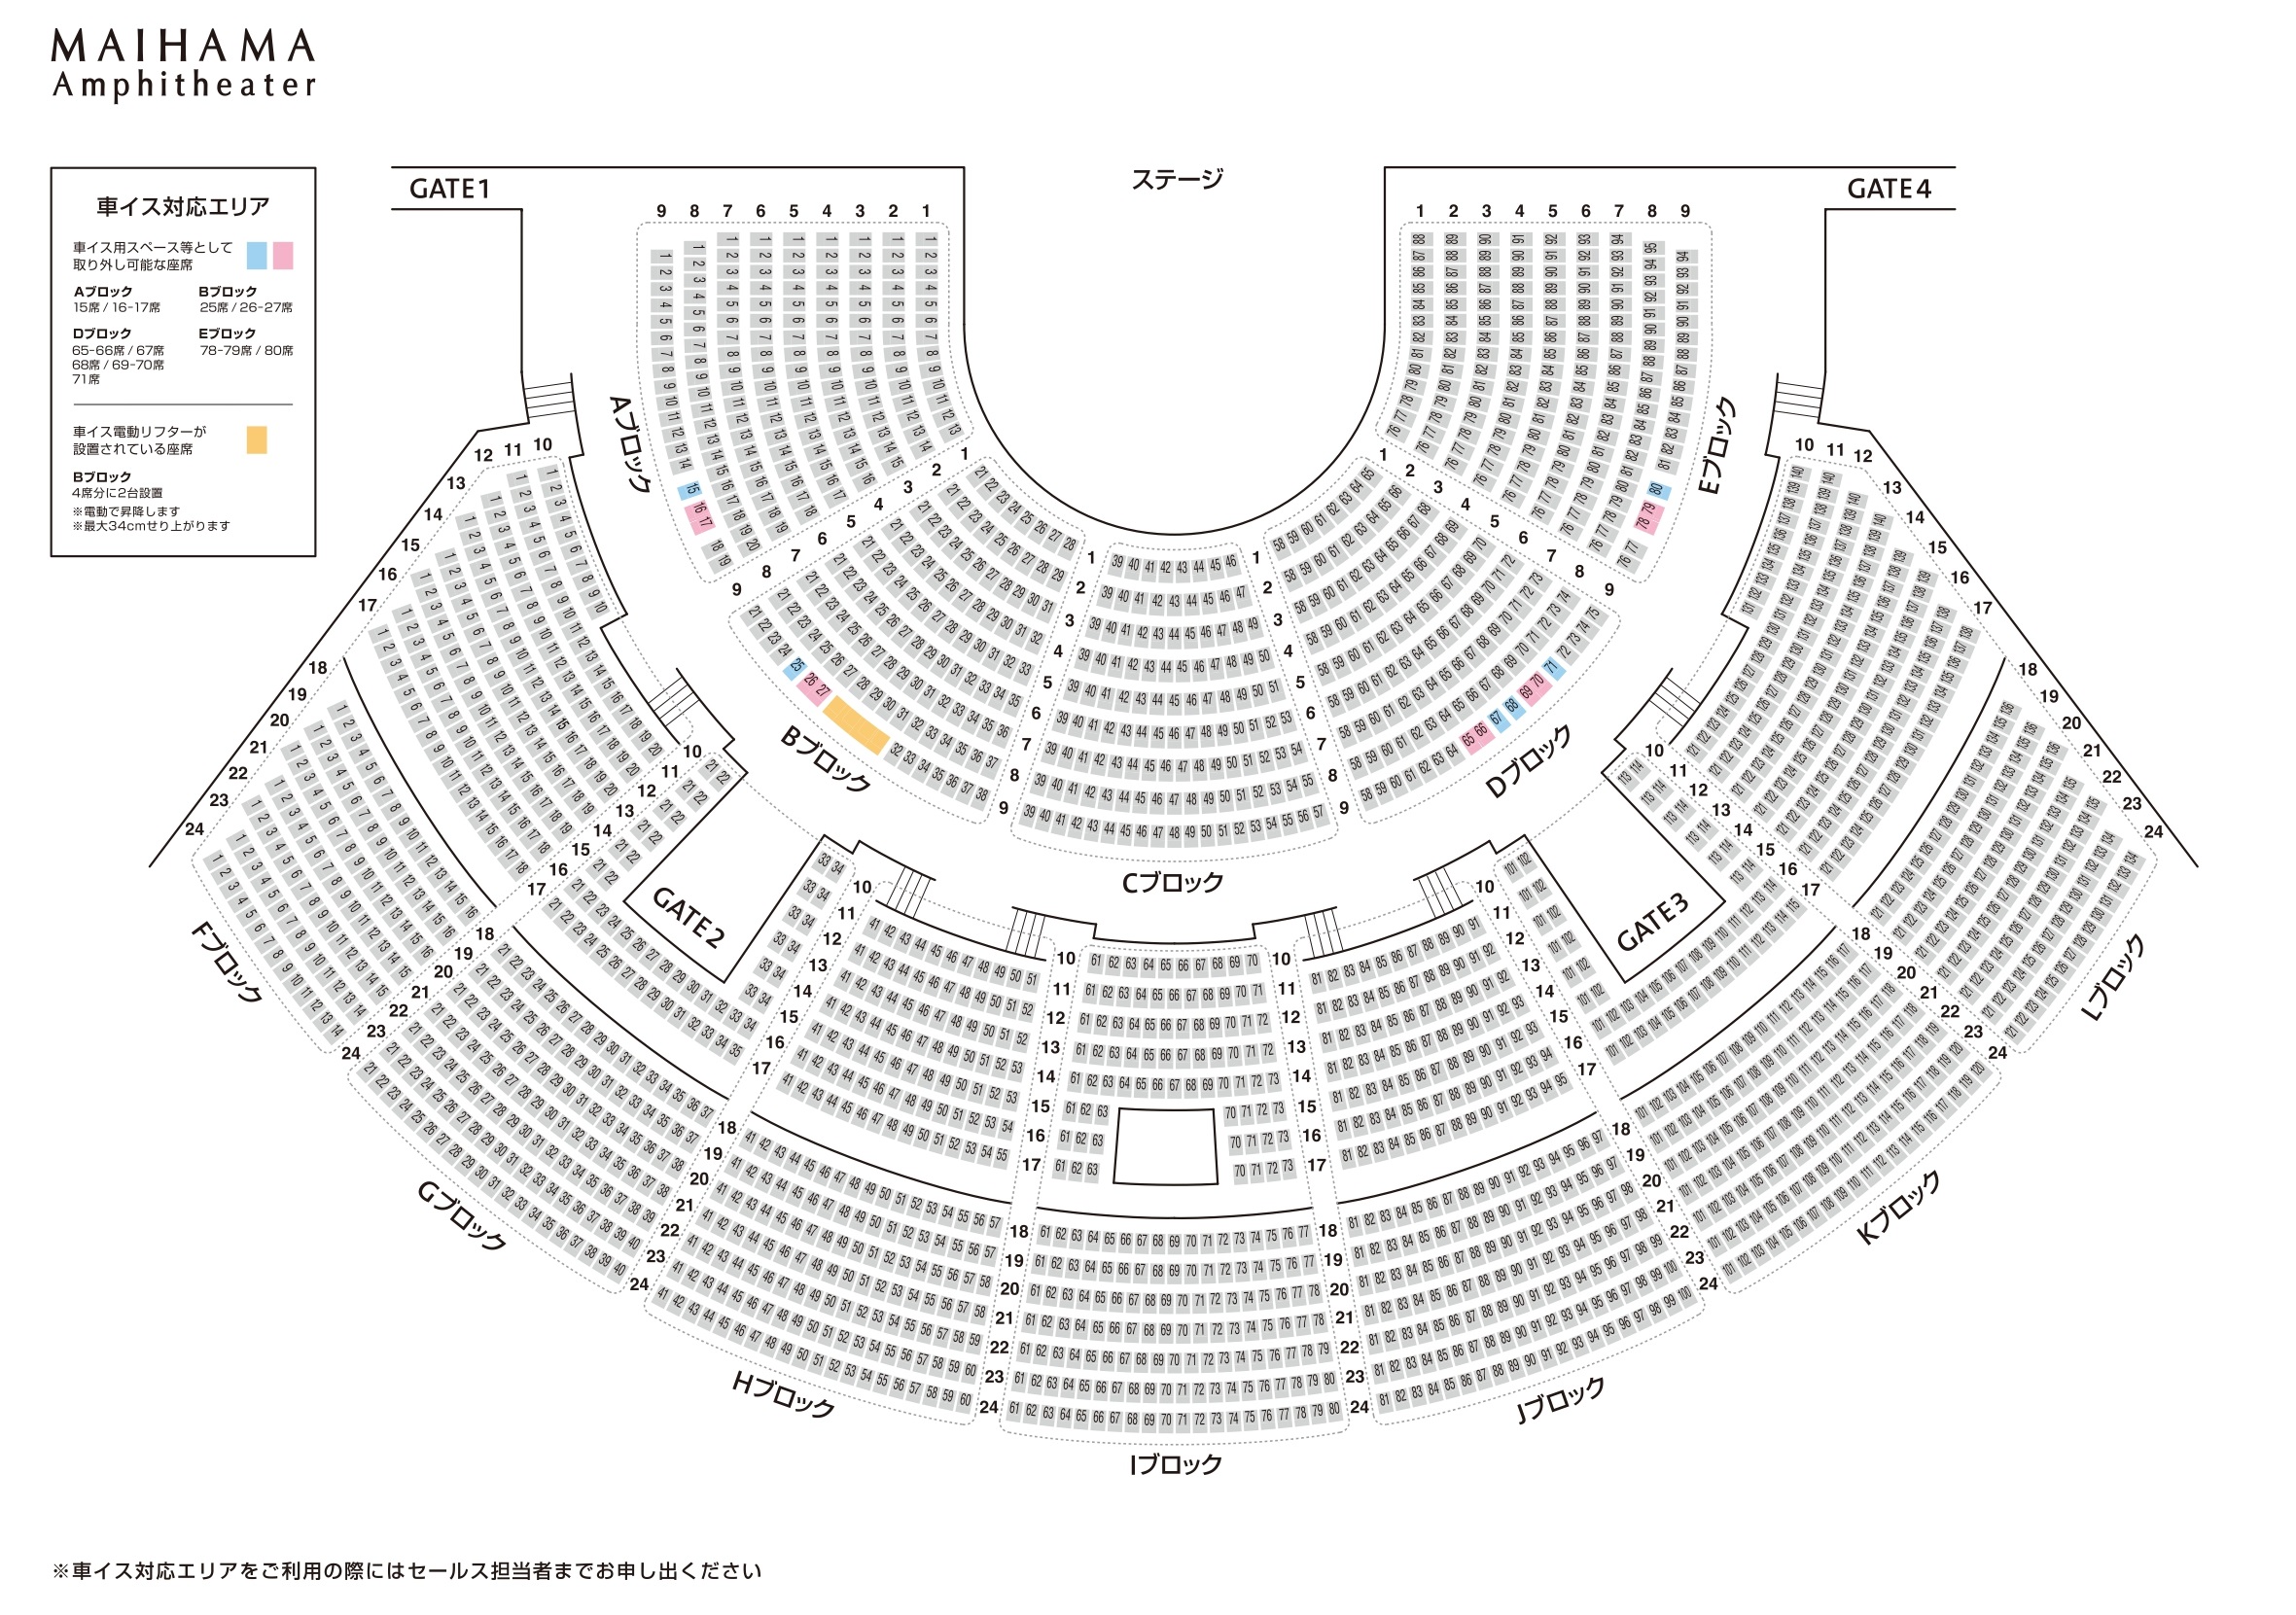 シアター 座席 アンフィ 舞浜 舞浜アンフィシアターの座席でHの19列目はやはりキャストの表